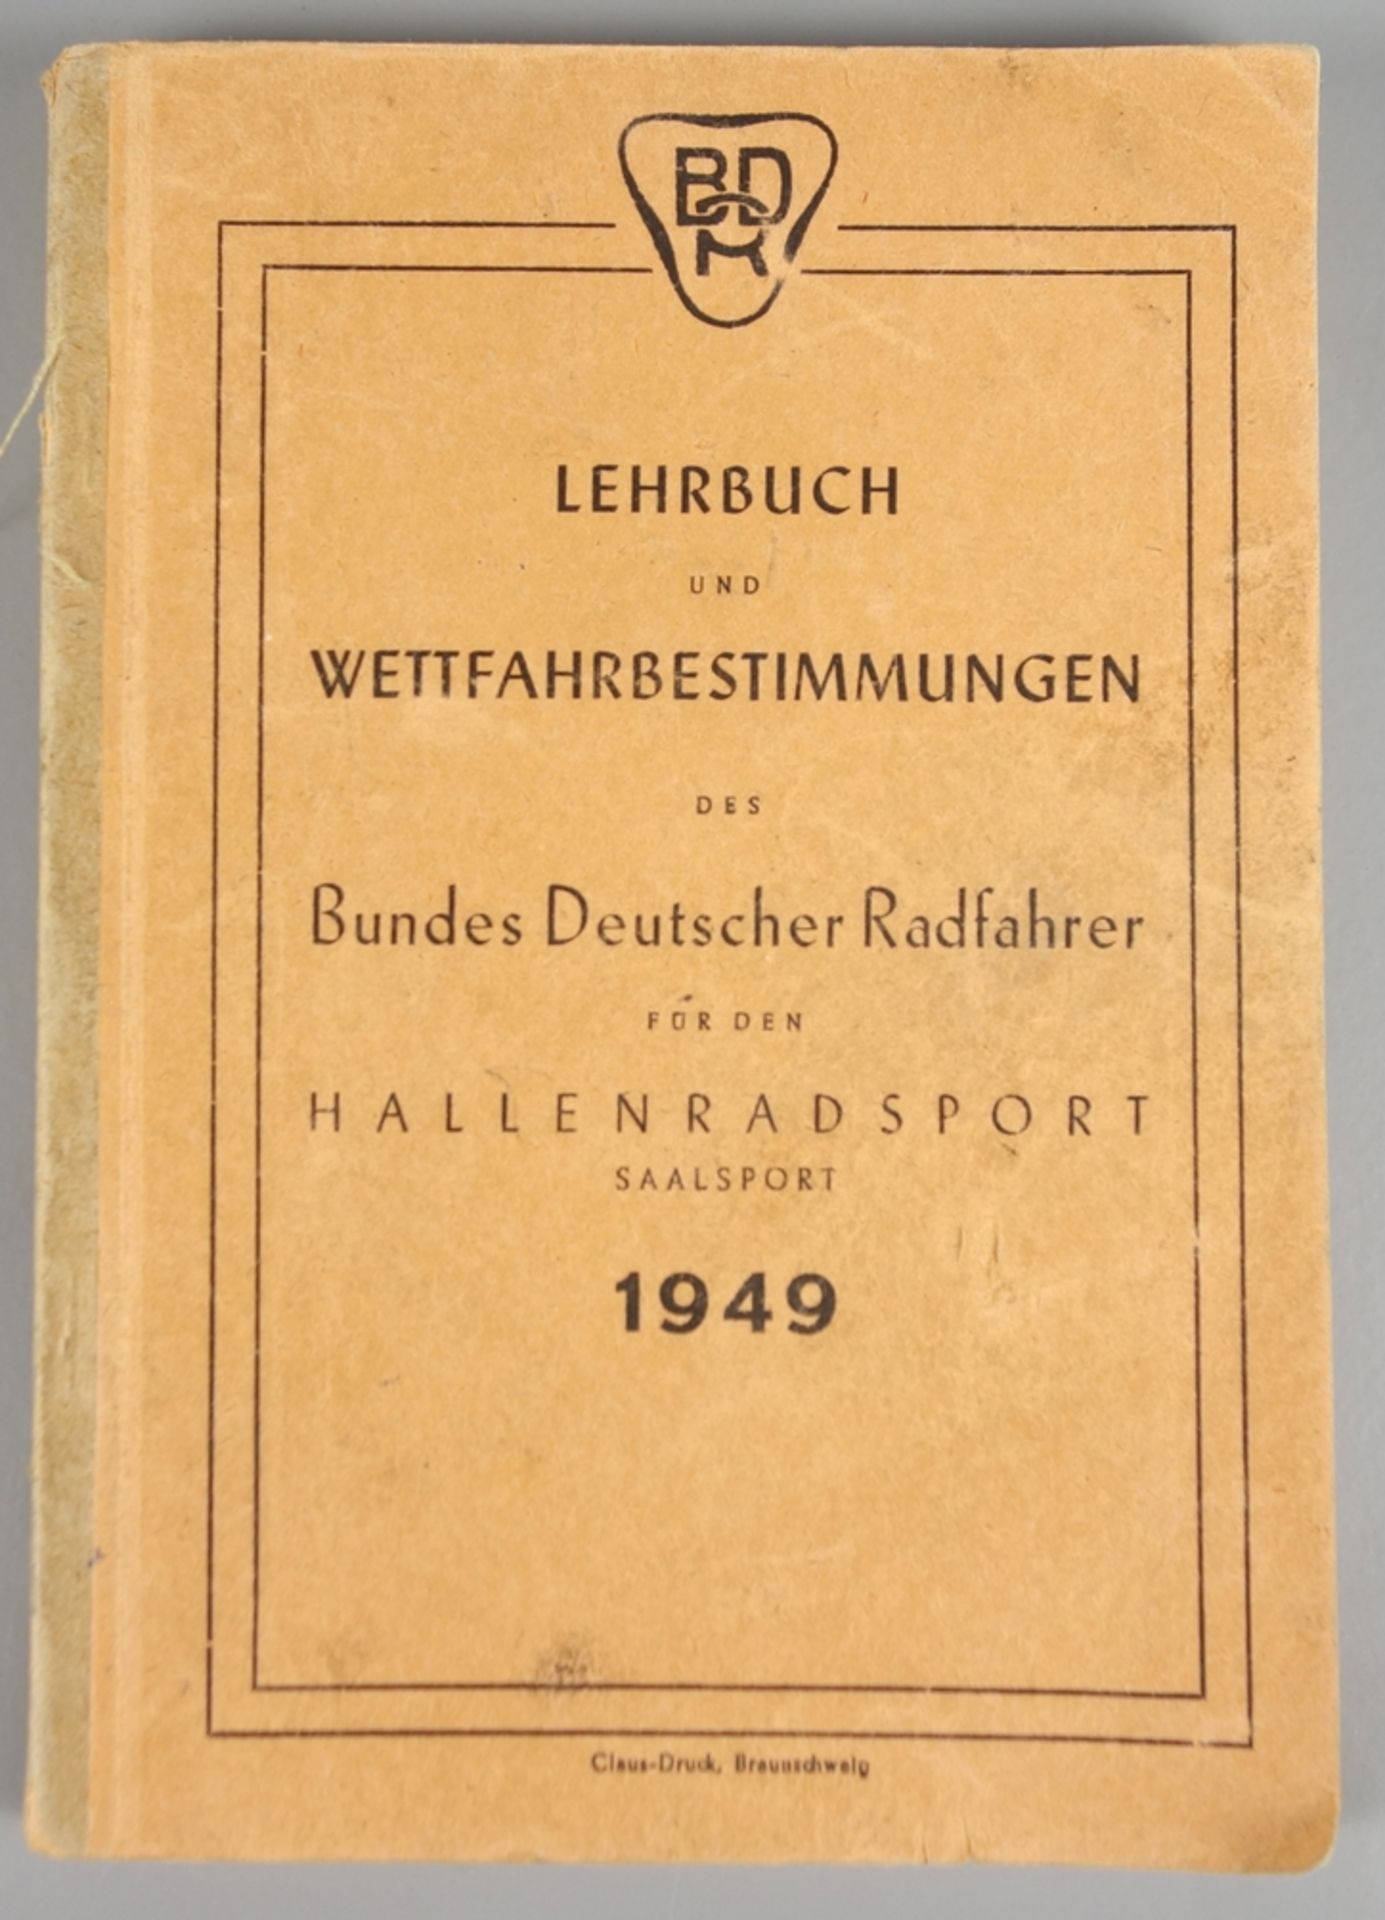 Lehrbuch und Wettfahrbestimmungen des Bundes Deutscher Radfahrer, 1949